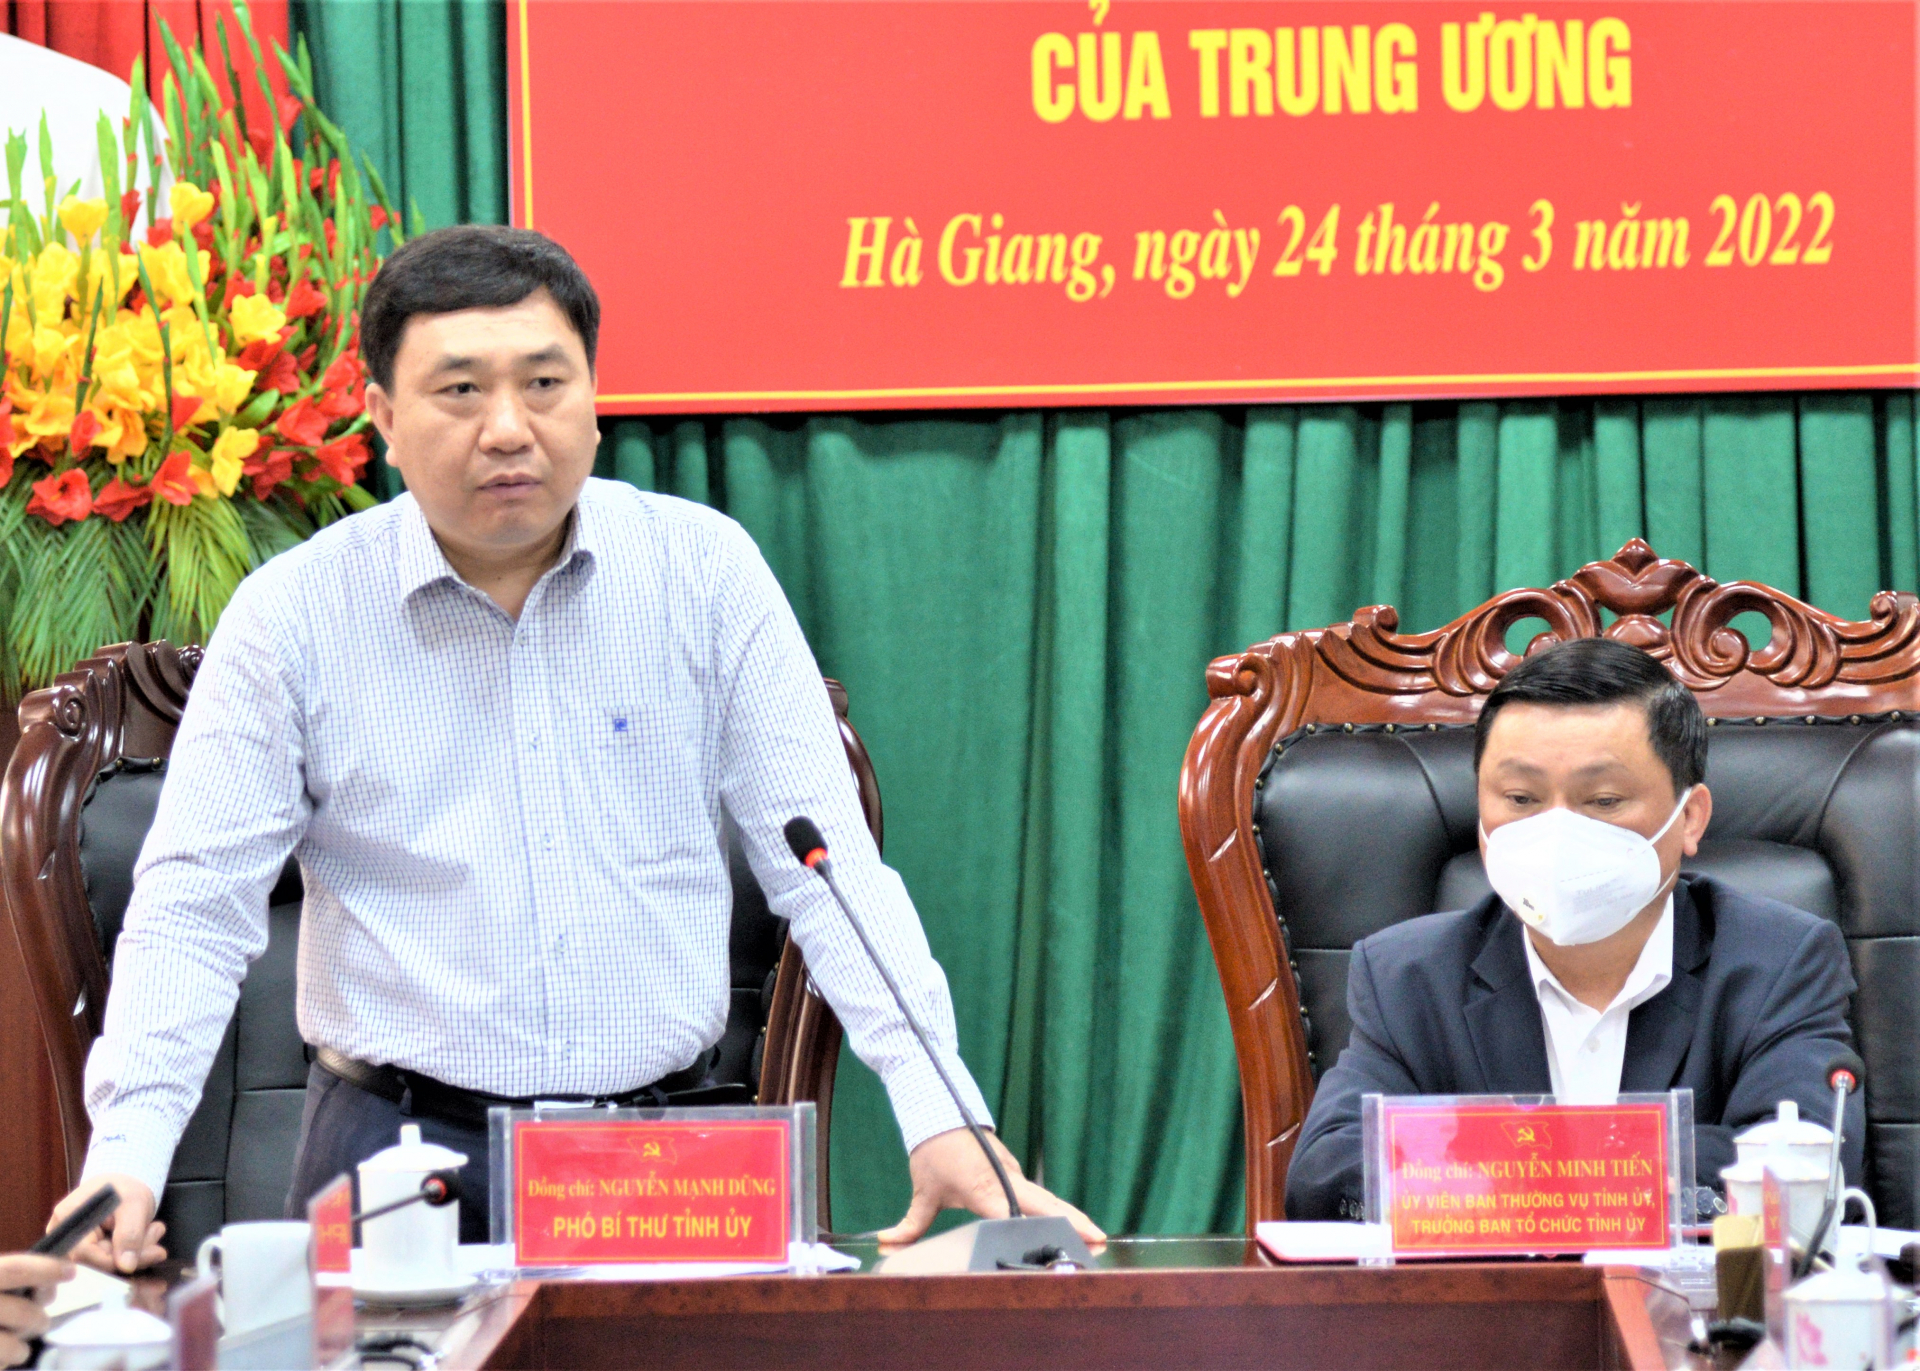 Phó Bí thư Tỉnh ủy Nguyễn Mạnh Dũng kết luận hội nghị.